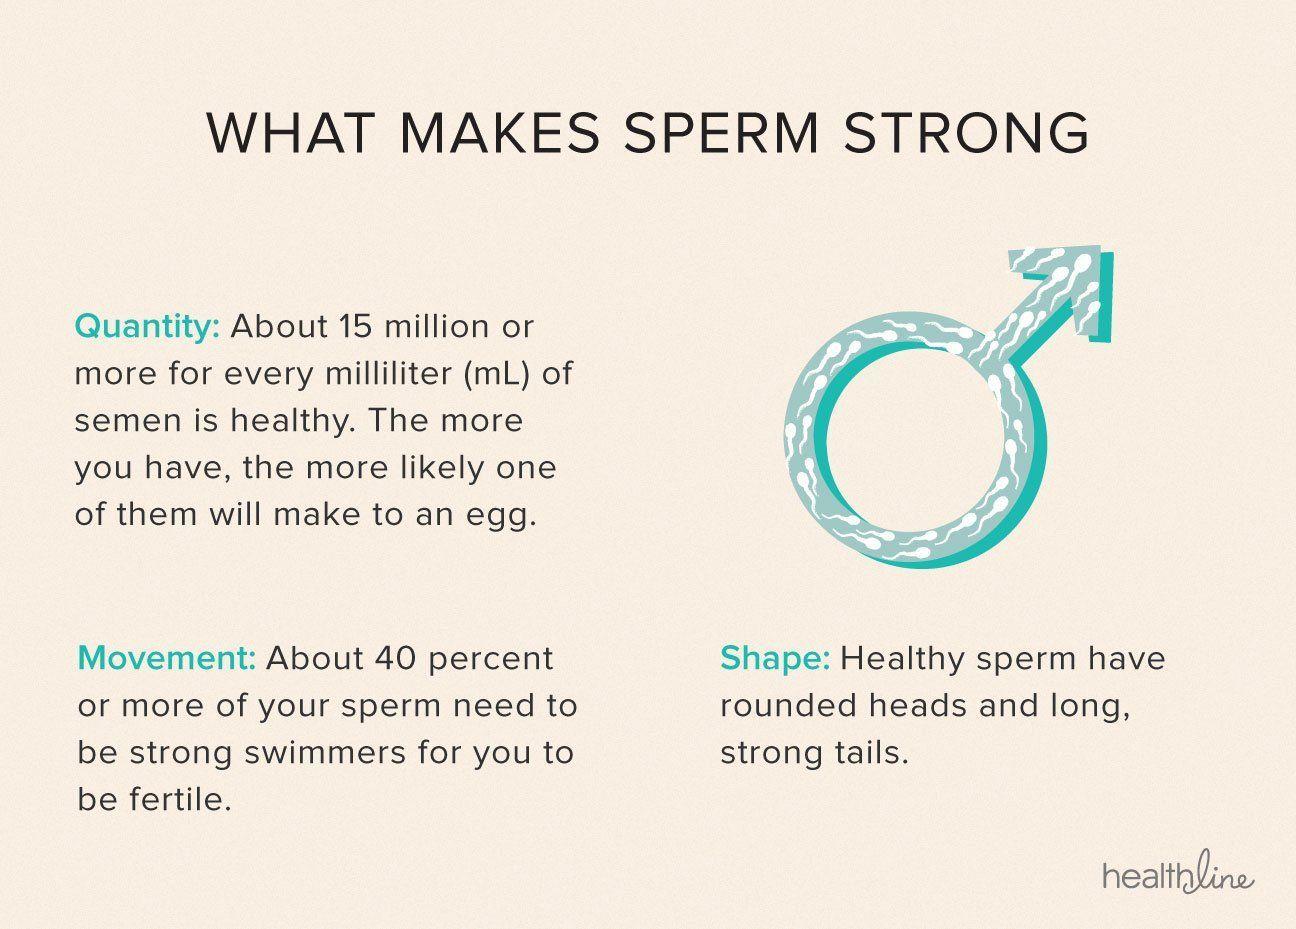 Not good sperm